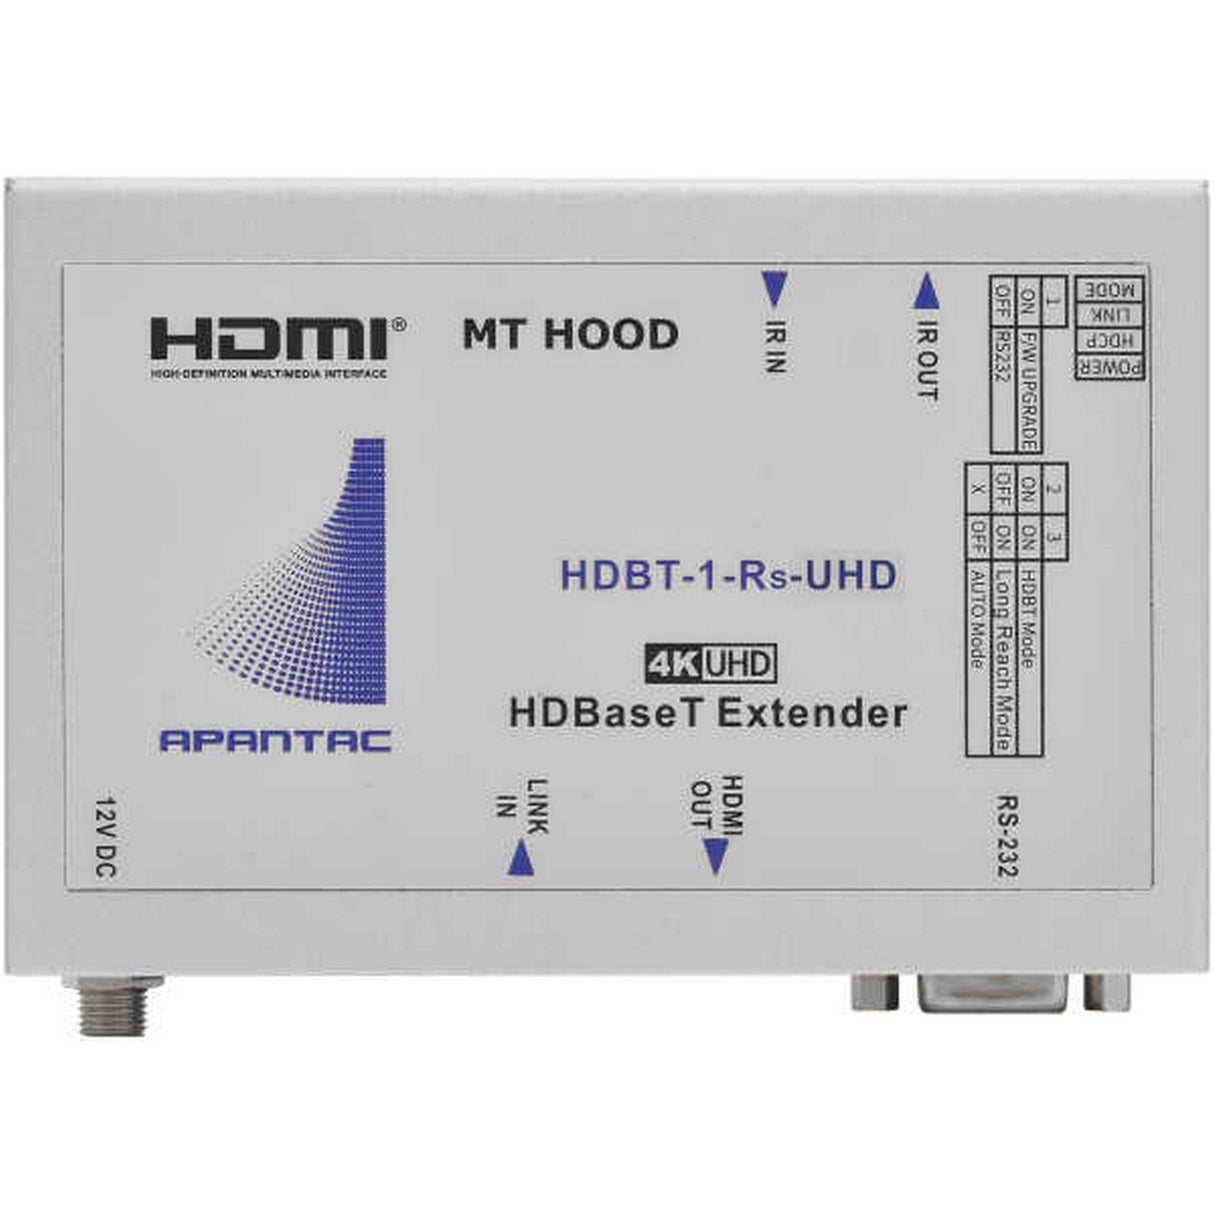 Apantac HDBT-1-Rs-UHD HDMI Receiver over CAT6